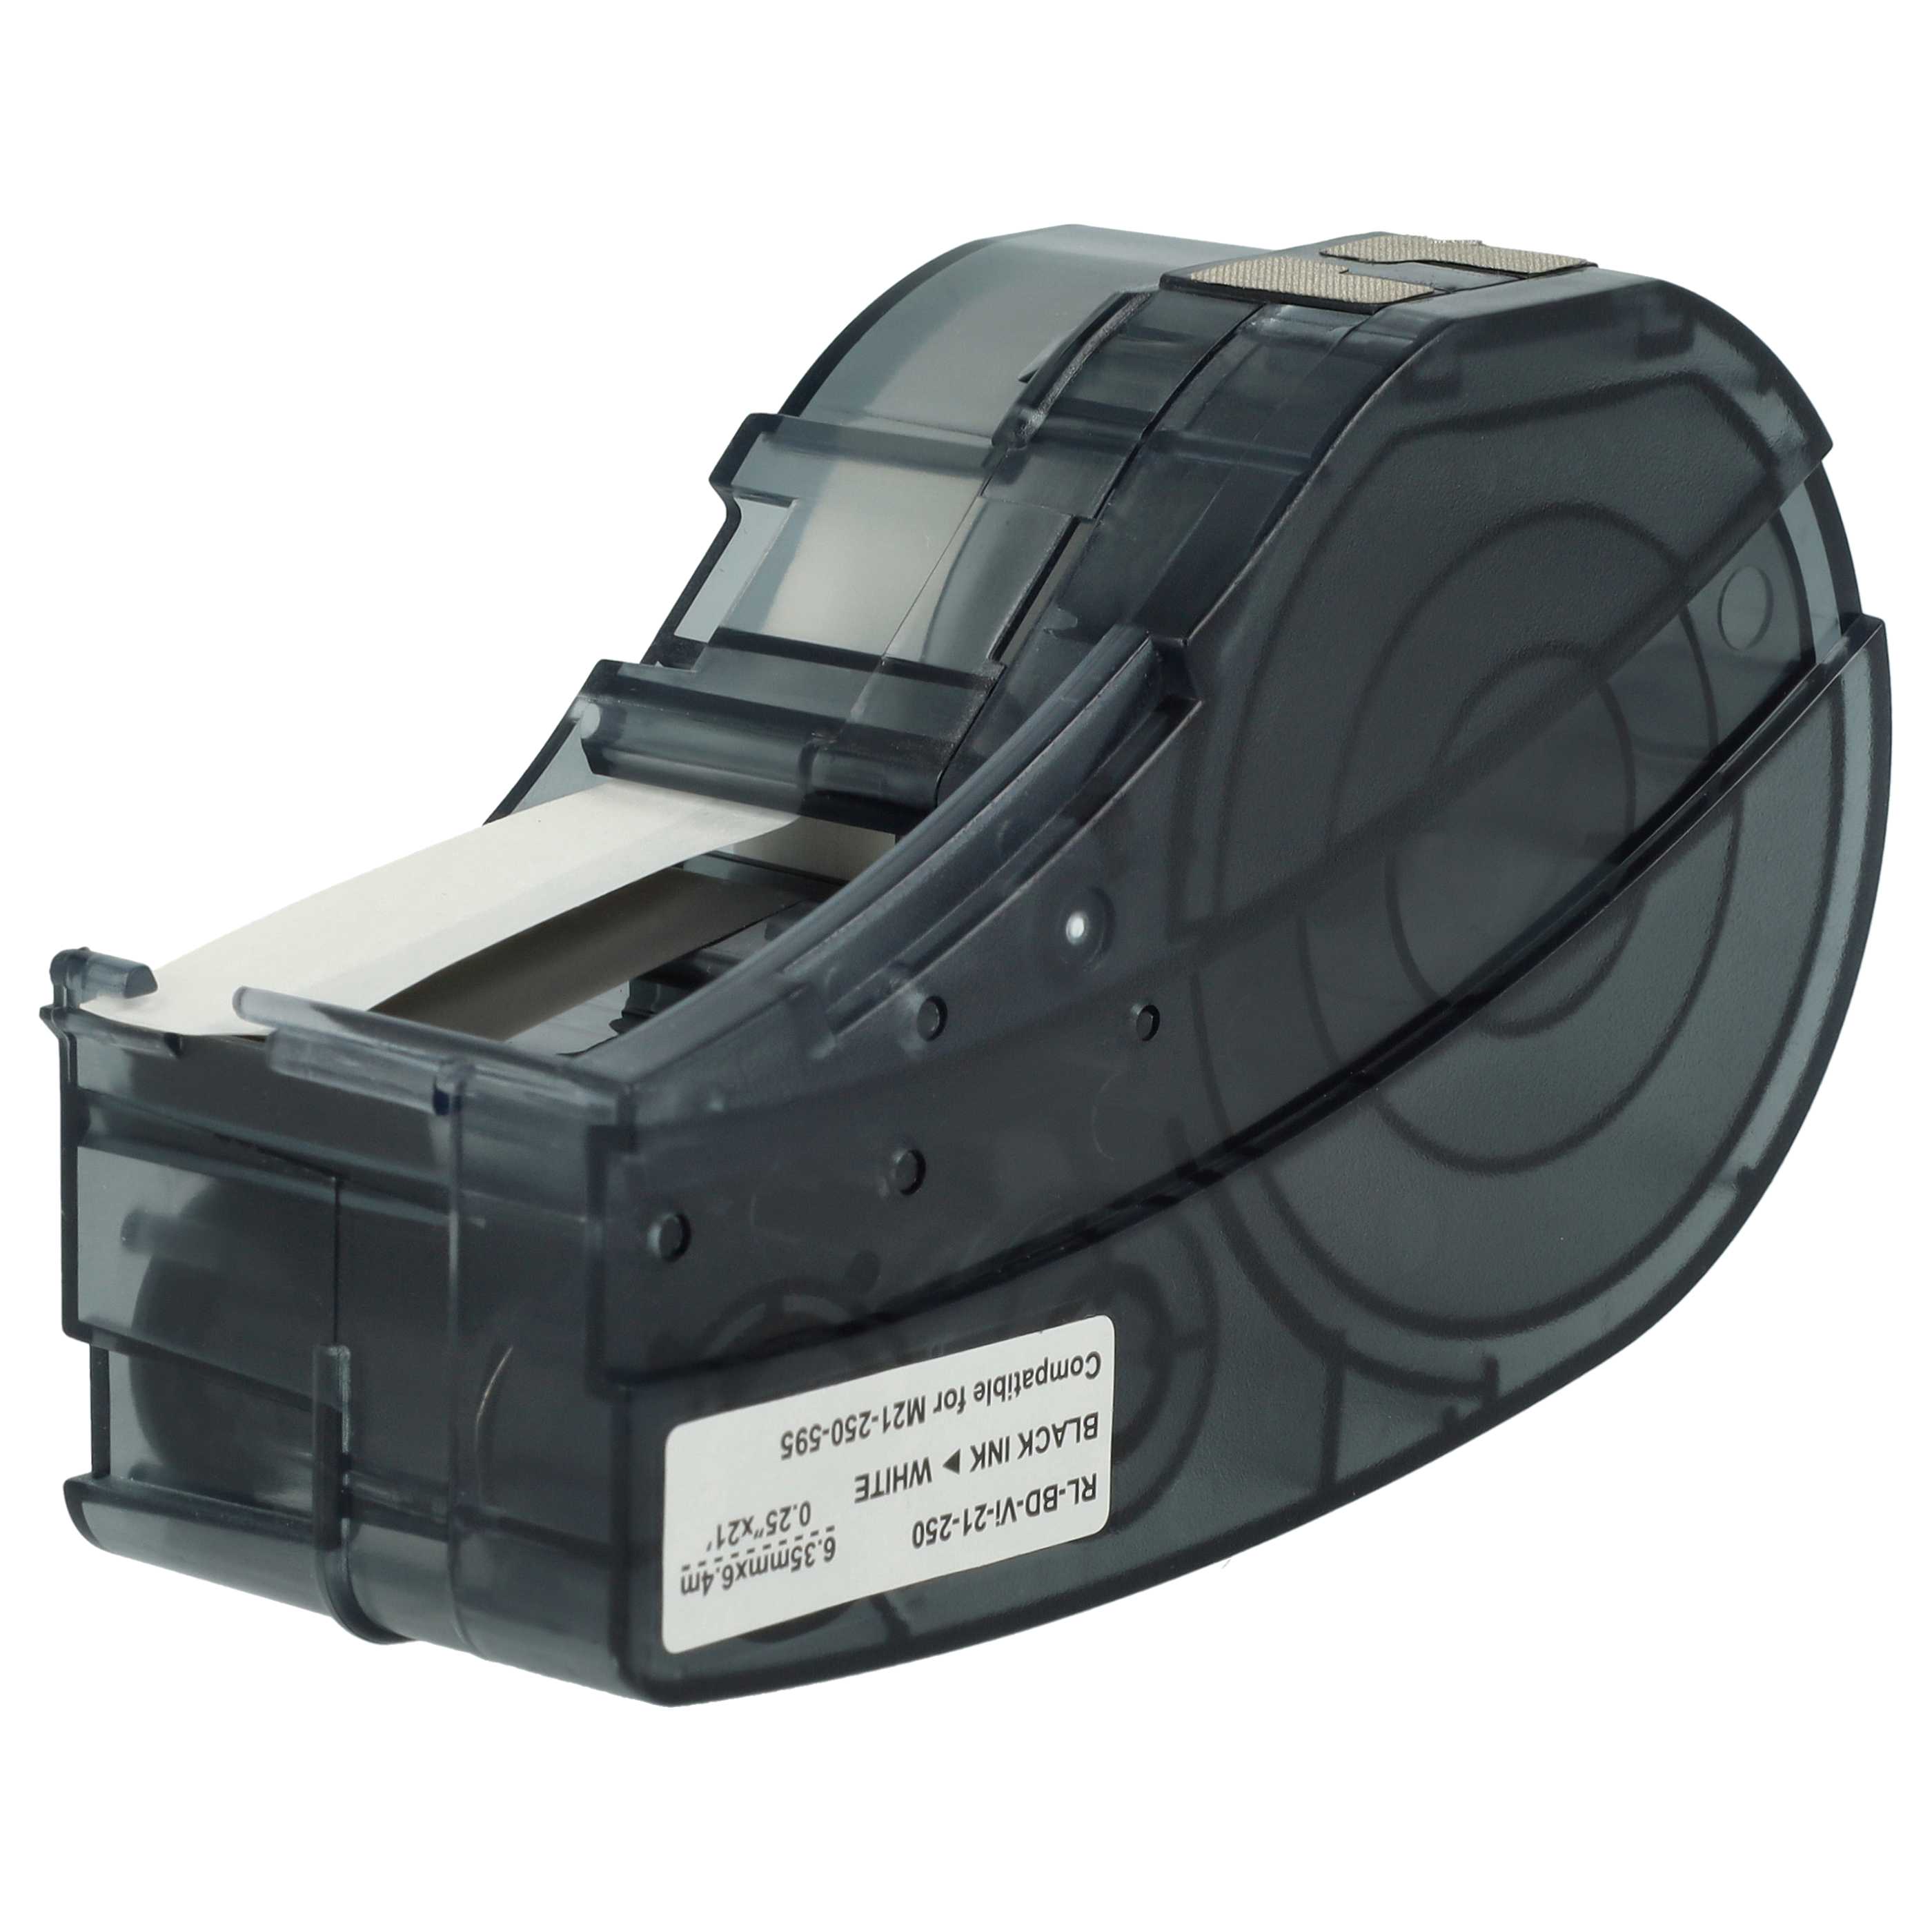 Cassetta nastro sostituisce Brady M21-250-595-WT per etichettatrice Brady 6,35mm nero su bianco, vinile